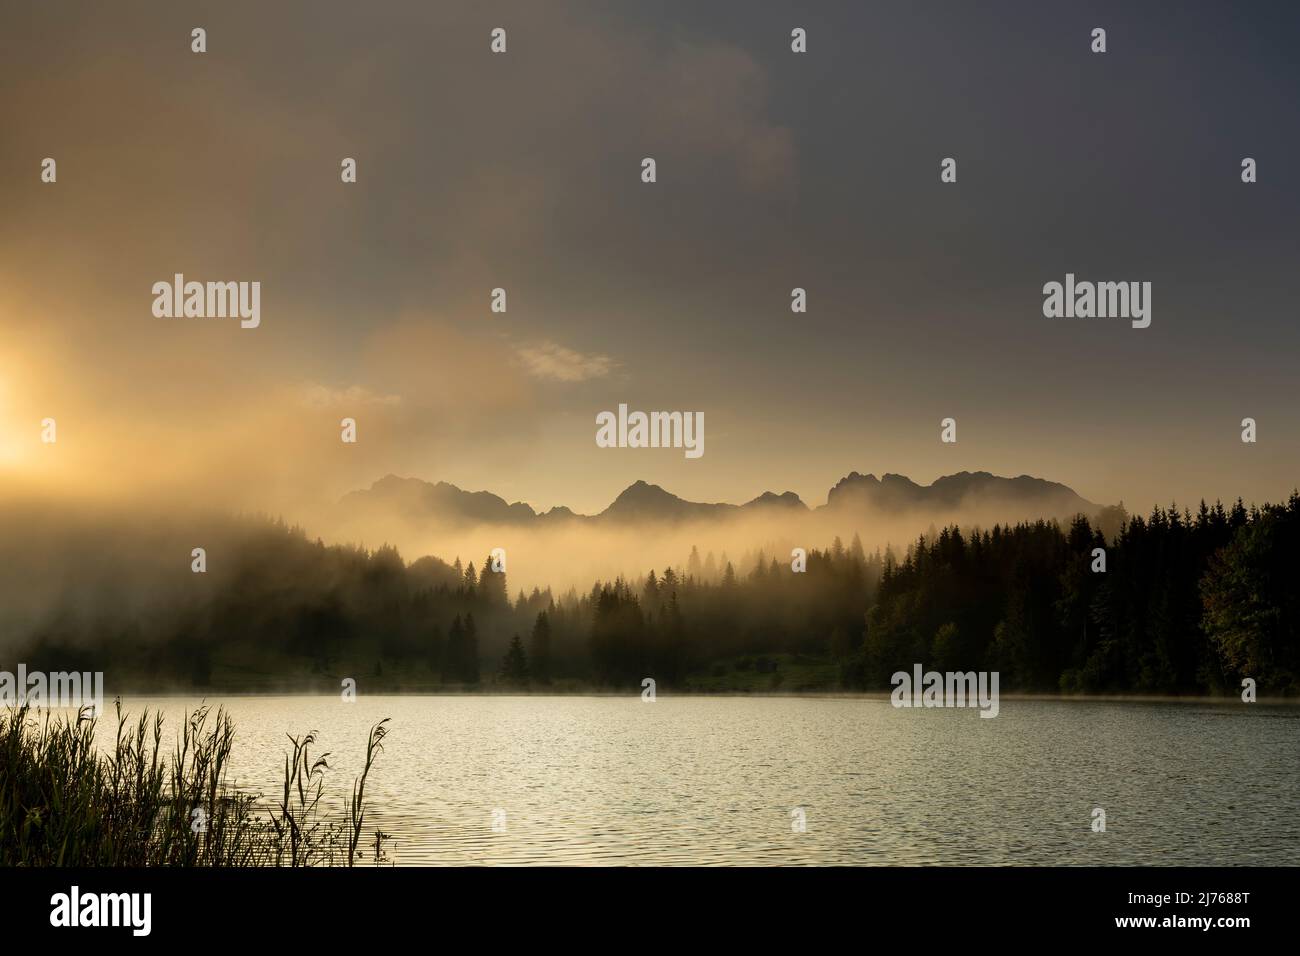 Nebel treibt trotz leichtem Wind kleine Wellen über den Geroldsee, auch Wagenbrüchsee genannt, in den bayerischen Alpen vor ihm. Die Sonne zaubert sanfte Farbtöne und im Hintergrund erstreckt sich das Karwendel. Stockfoto